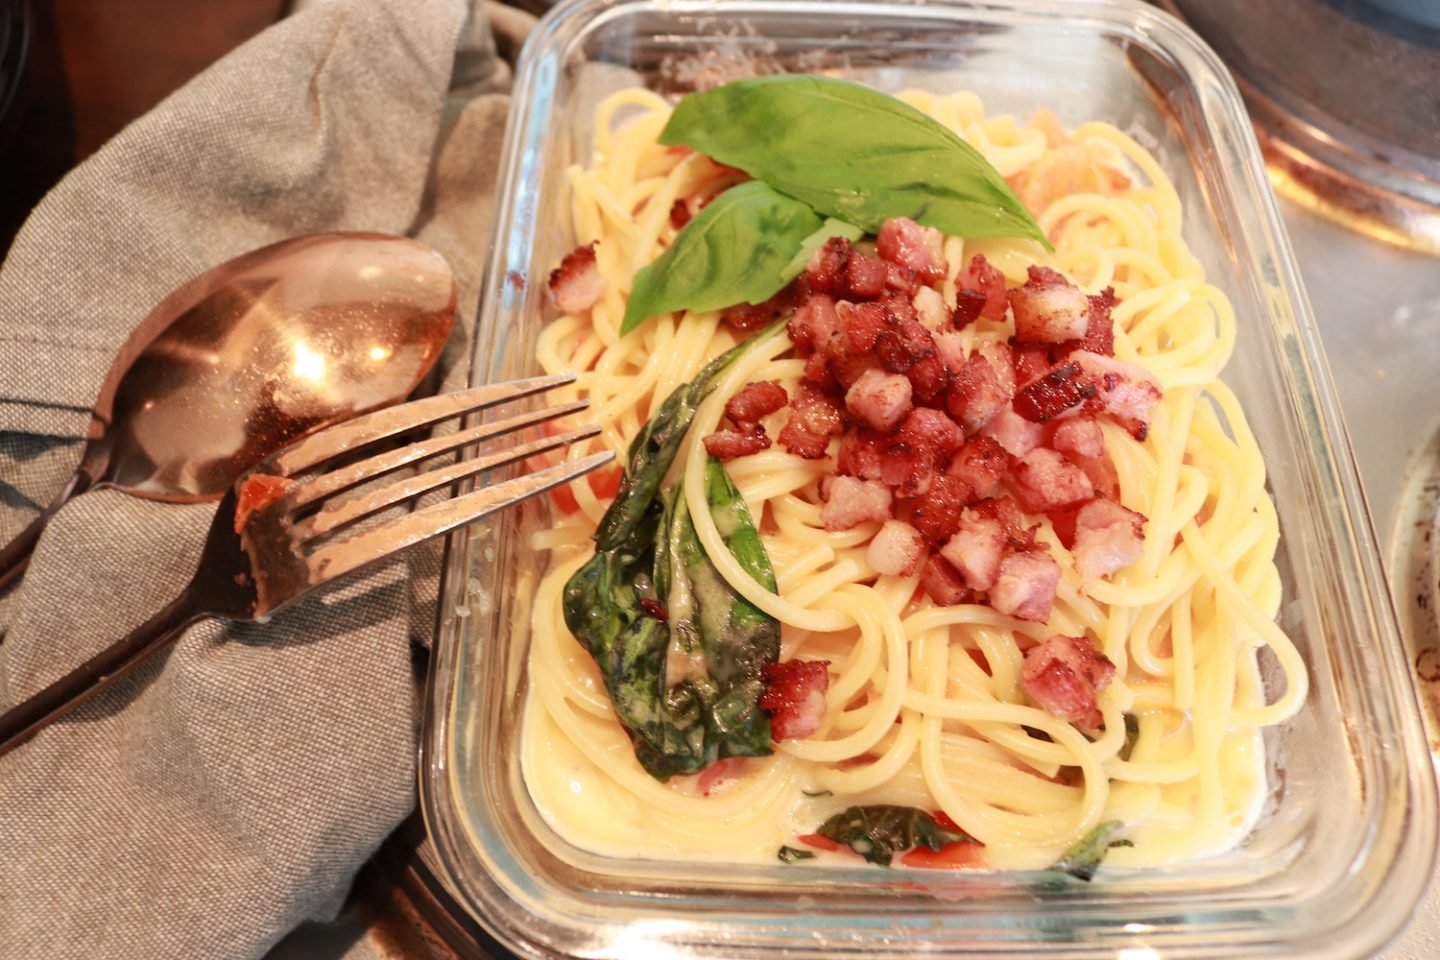 Recette facile de spaghettis au camembert et aux tomates au four Vegan dans un plat à rôtir en verre avec des couverts en cuivre/bronze et un torchon gris.